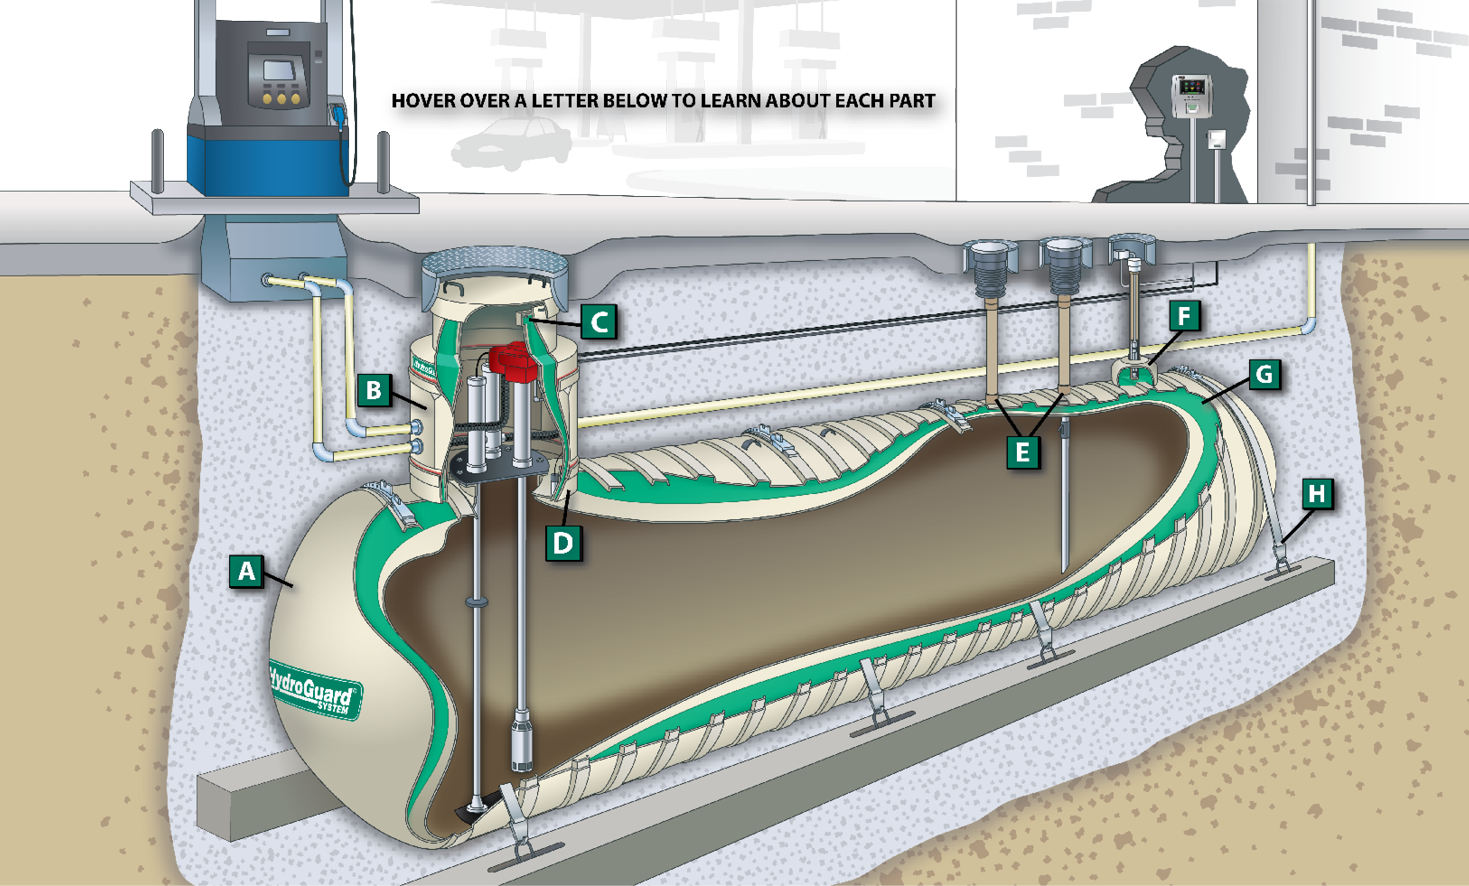 Резервуар наполняется водой. Подземные резервуары с СУГ на АЗС. Подземный резервуар для нефтепродуктов на АЗС. Бак дренажных вод v 10 м3. Резервуар СУГ 10м3 подземный.